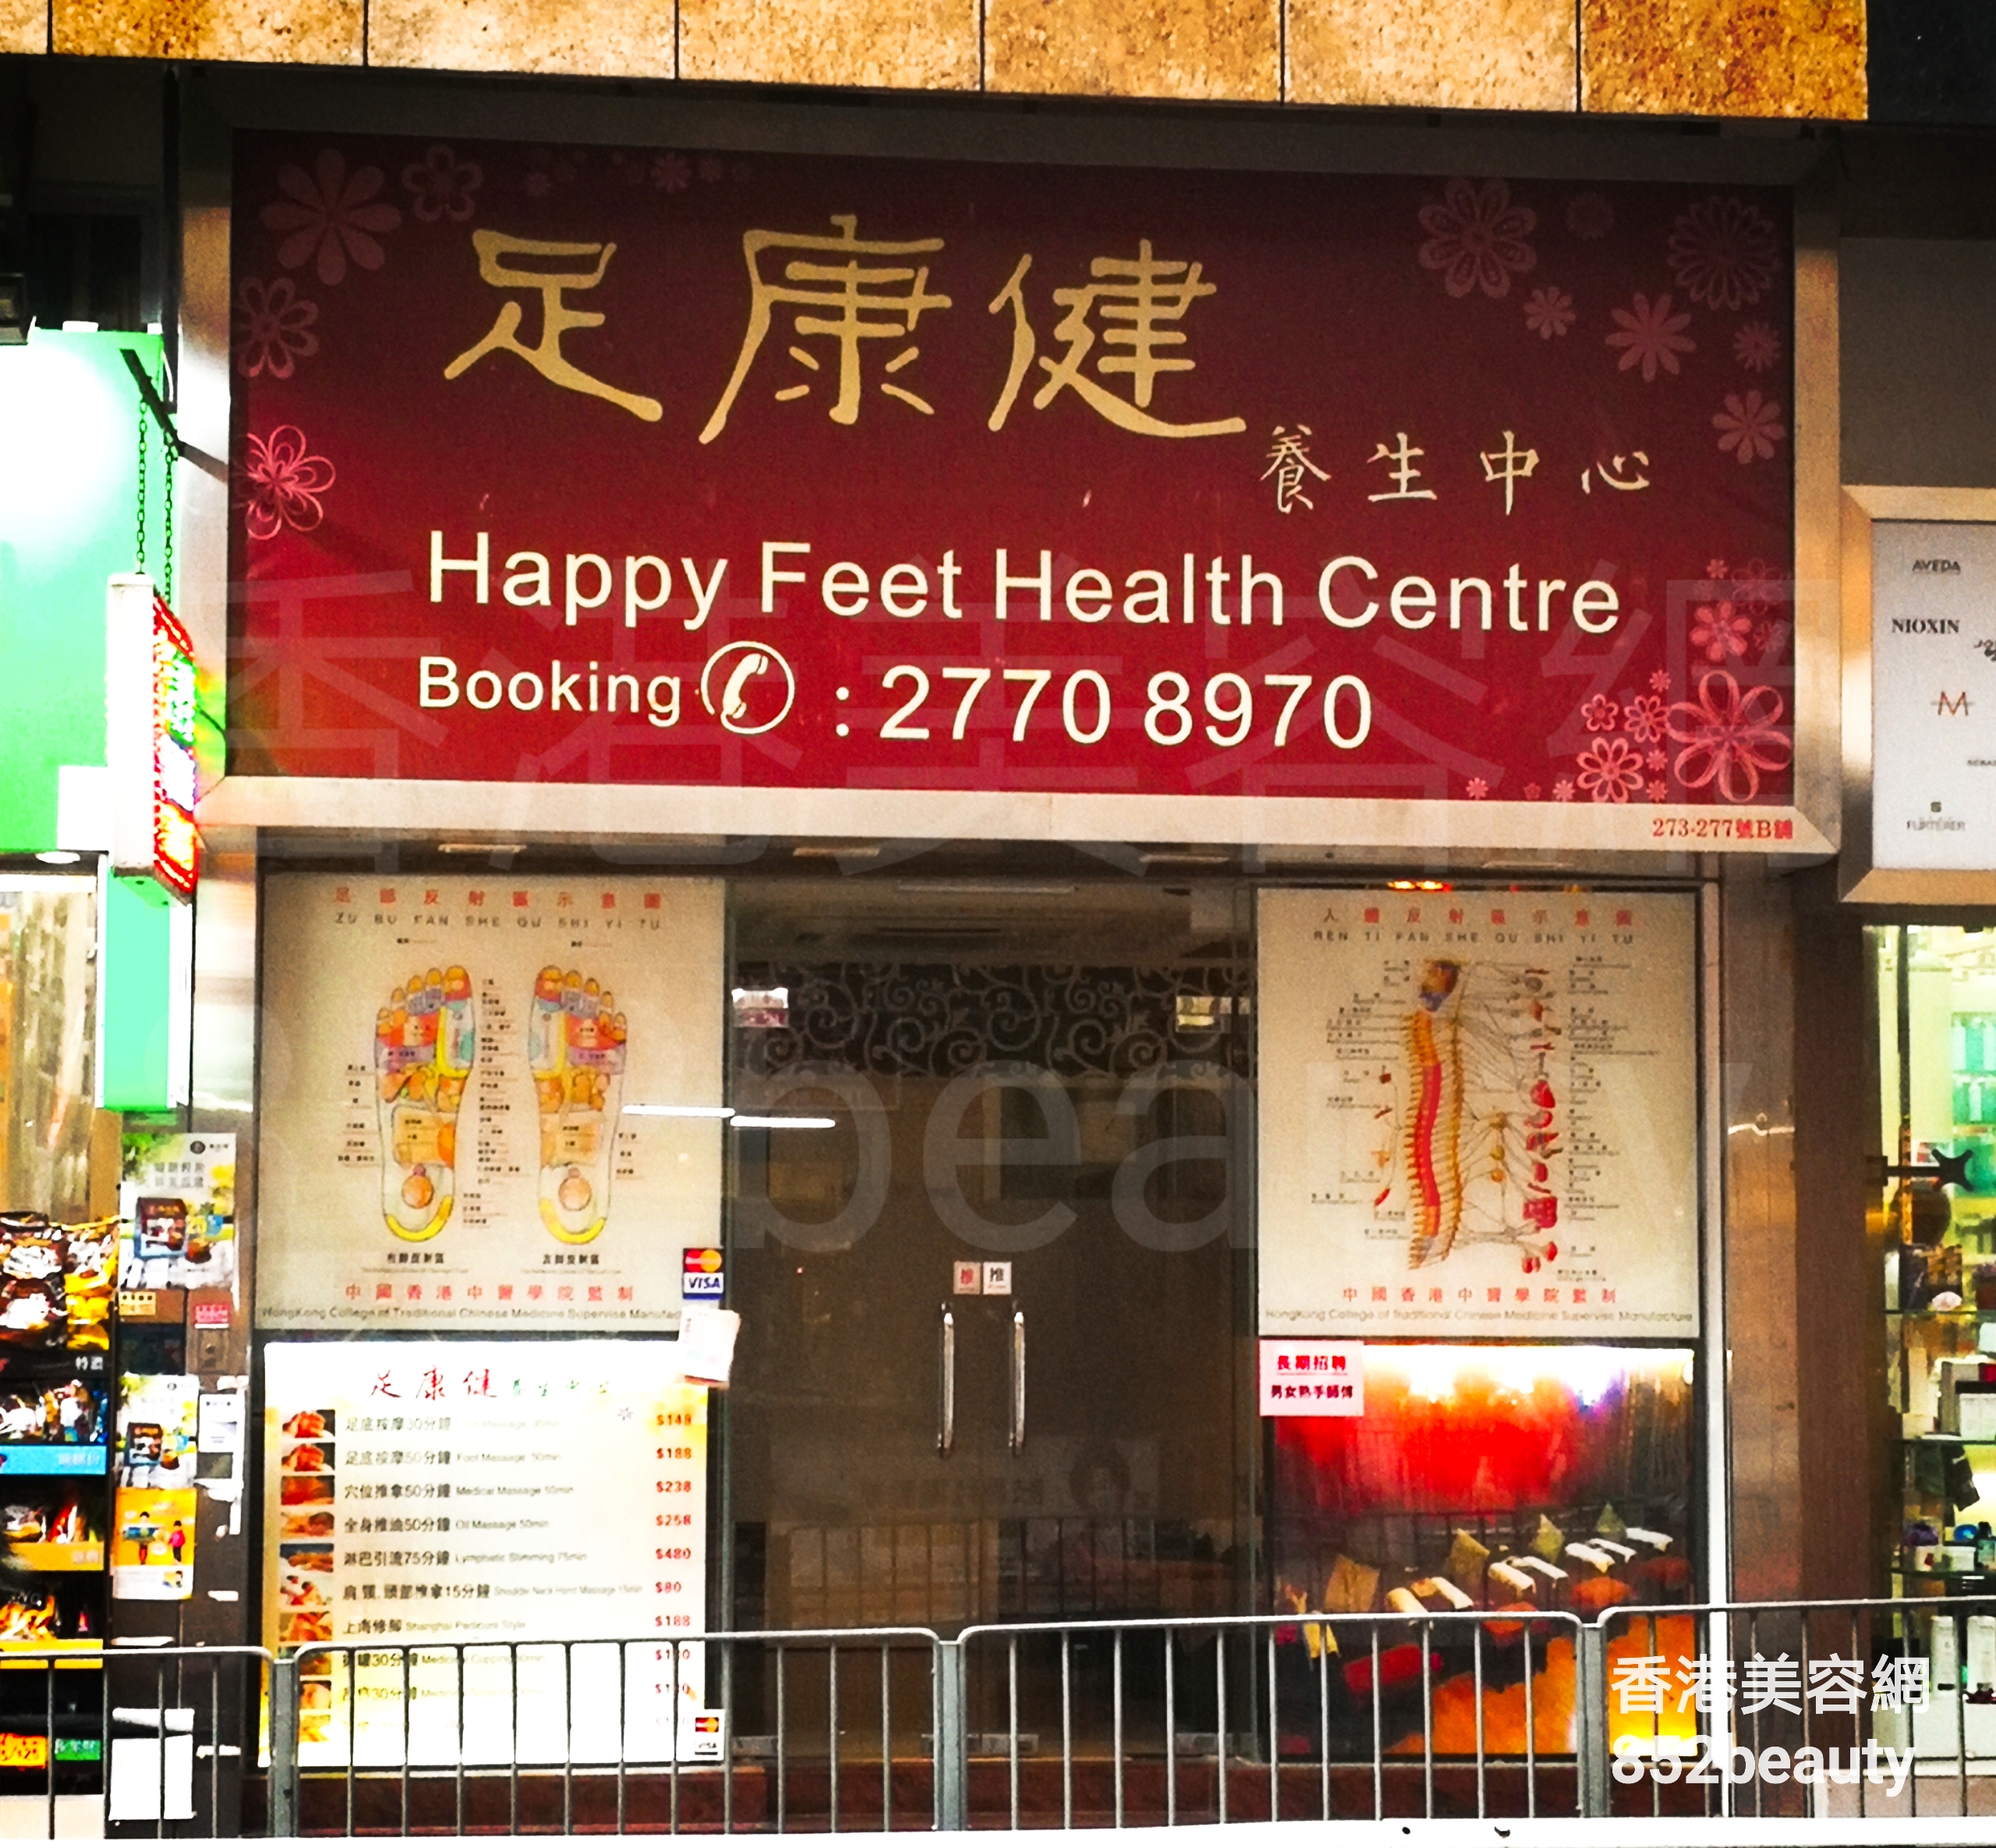 香港美容網 Hong Kong Beauty Salon 美容院 / 美容師: 足康健 養生中心